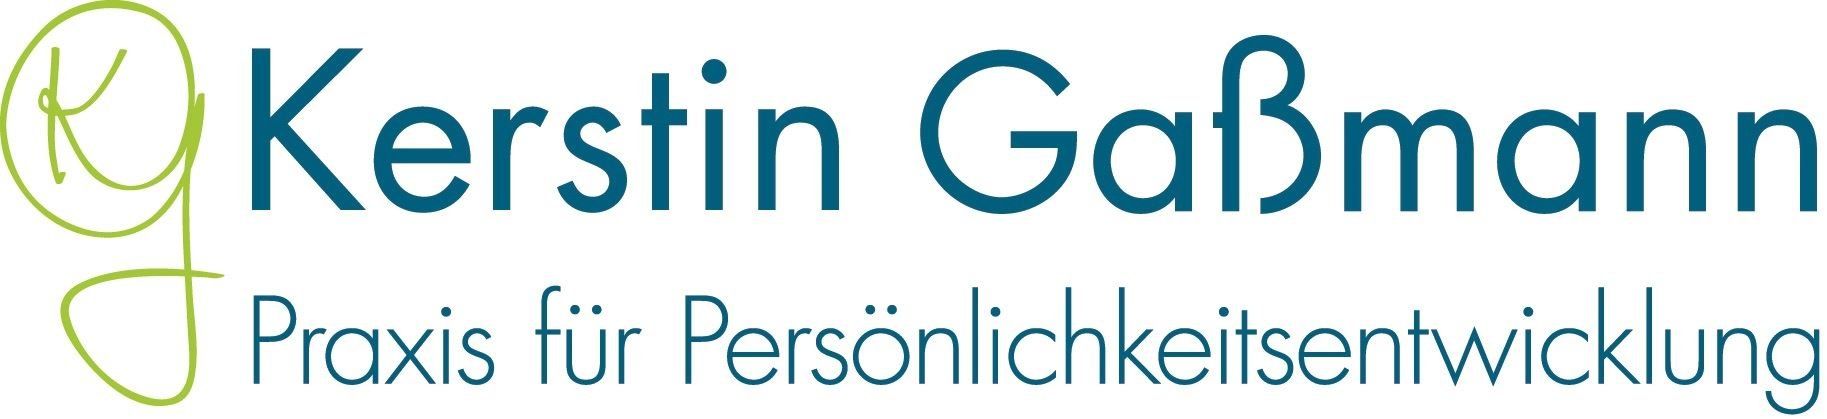 Kerstin Gaßmann - Praxis für Persönlichkeitsentwicklung